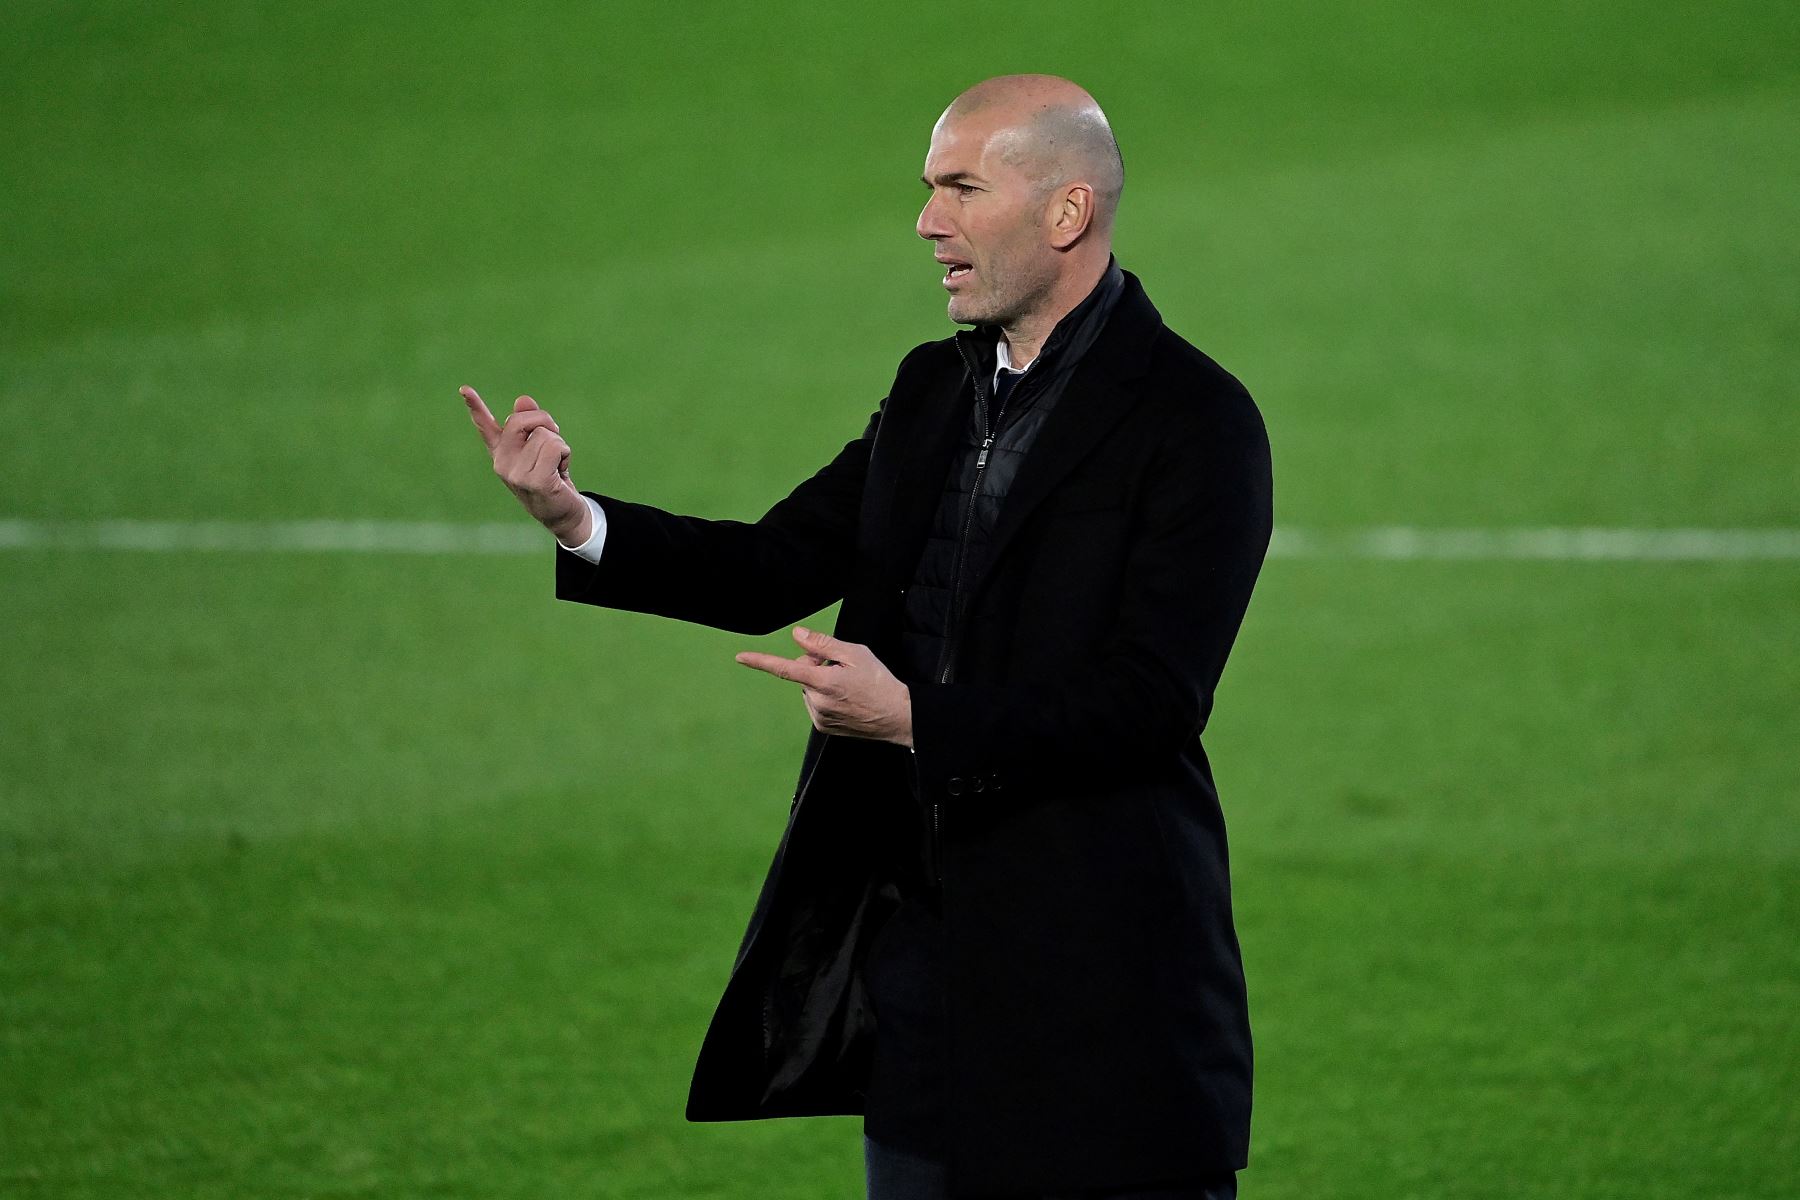 El técnico francés del Real Madrid Zinedine Zidane reacciona durante el partido de fútbol de la liga española entre el Real Madrid CF y la Real Sociedad.
Foto: AFP